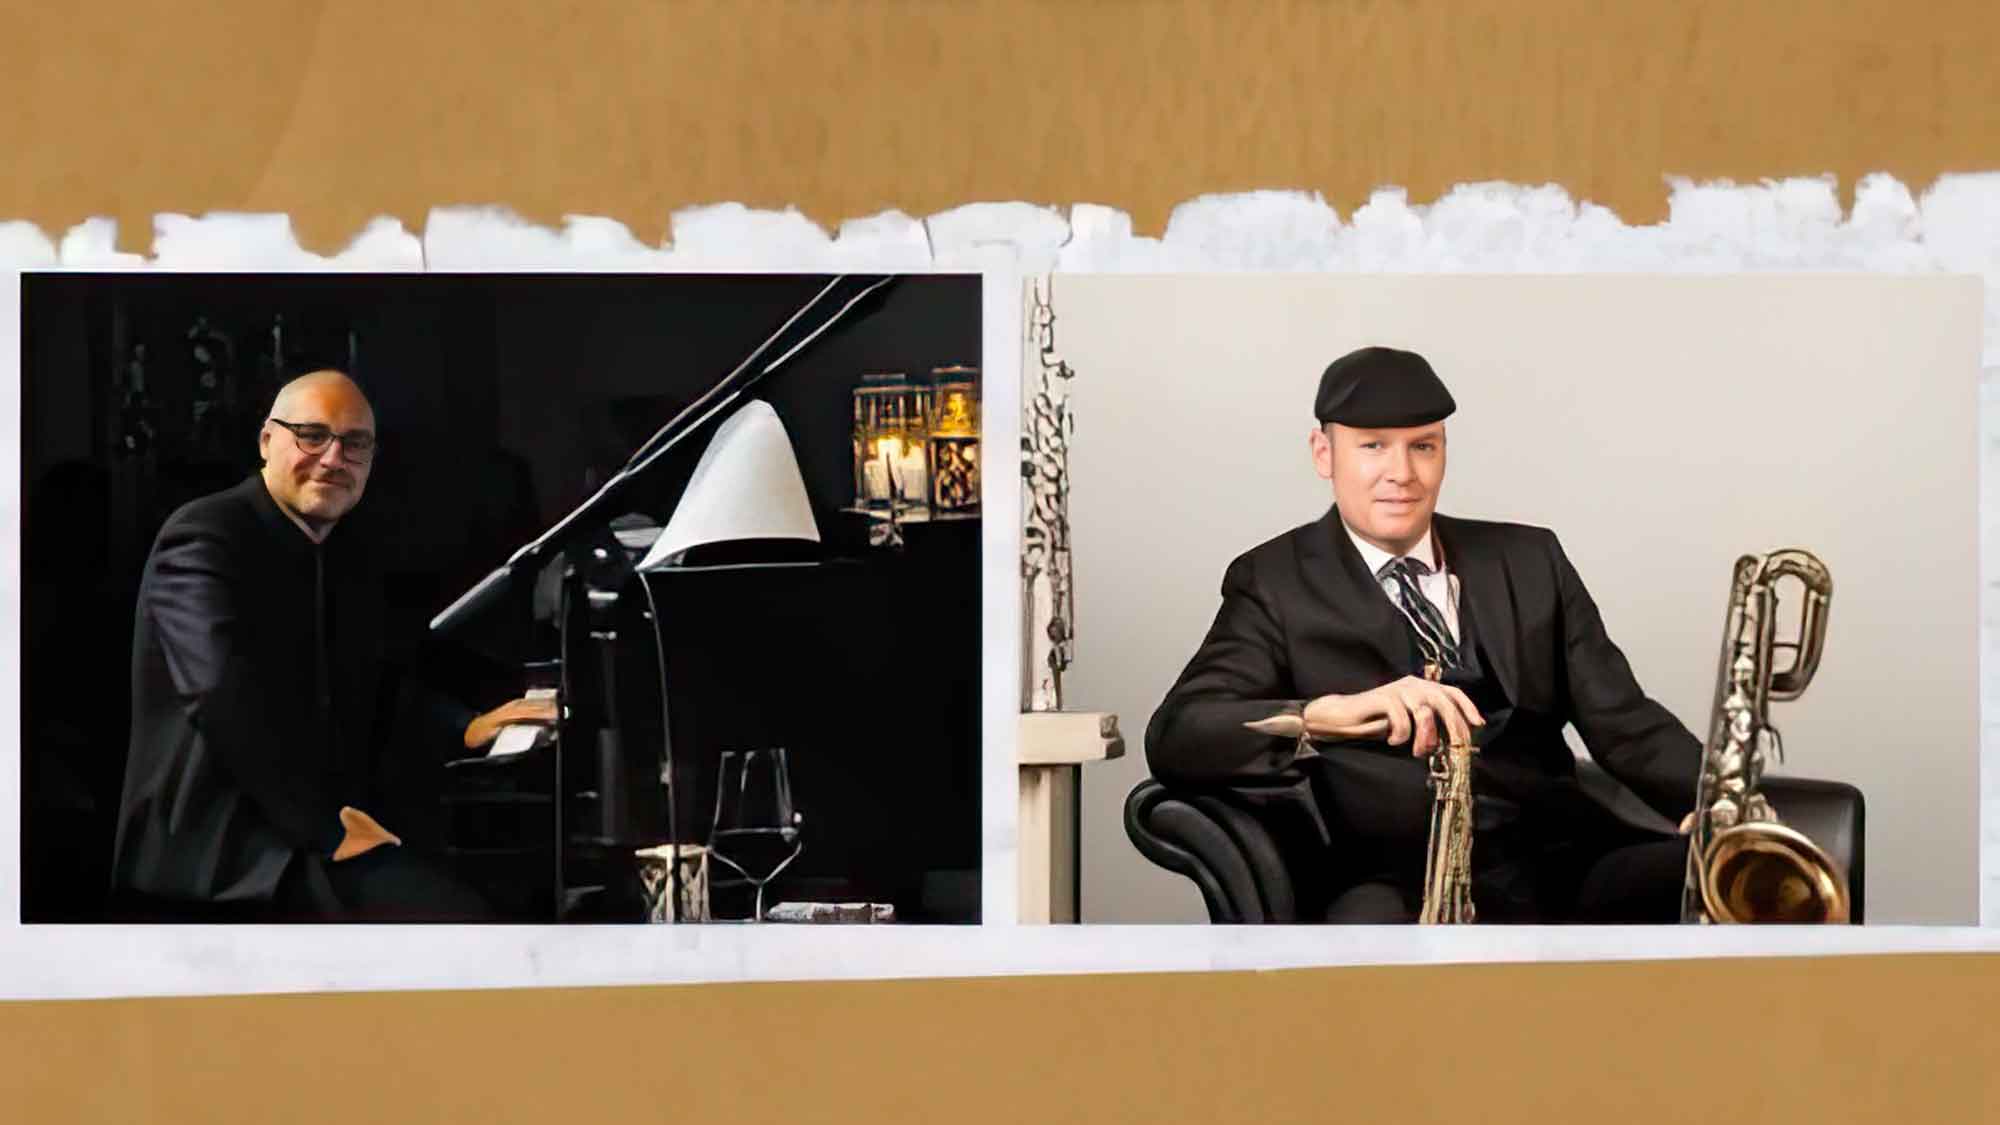 Der deutsche Saxophonist David Milzow und der italienische Pianist Vittorio Mezza veröffentlichen ihr 3. Jazz Album